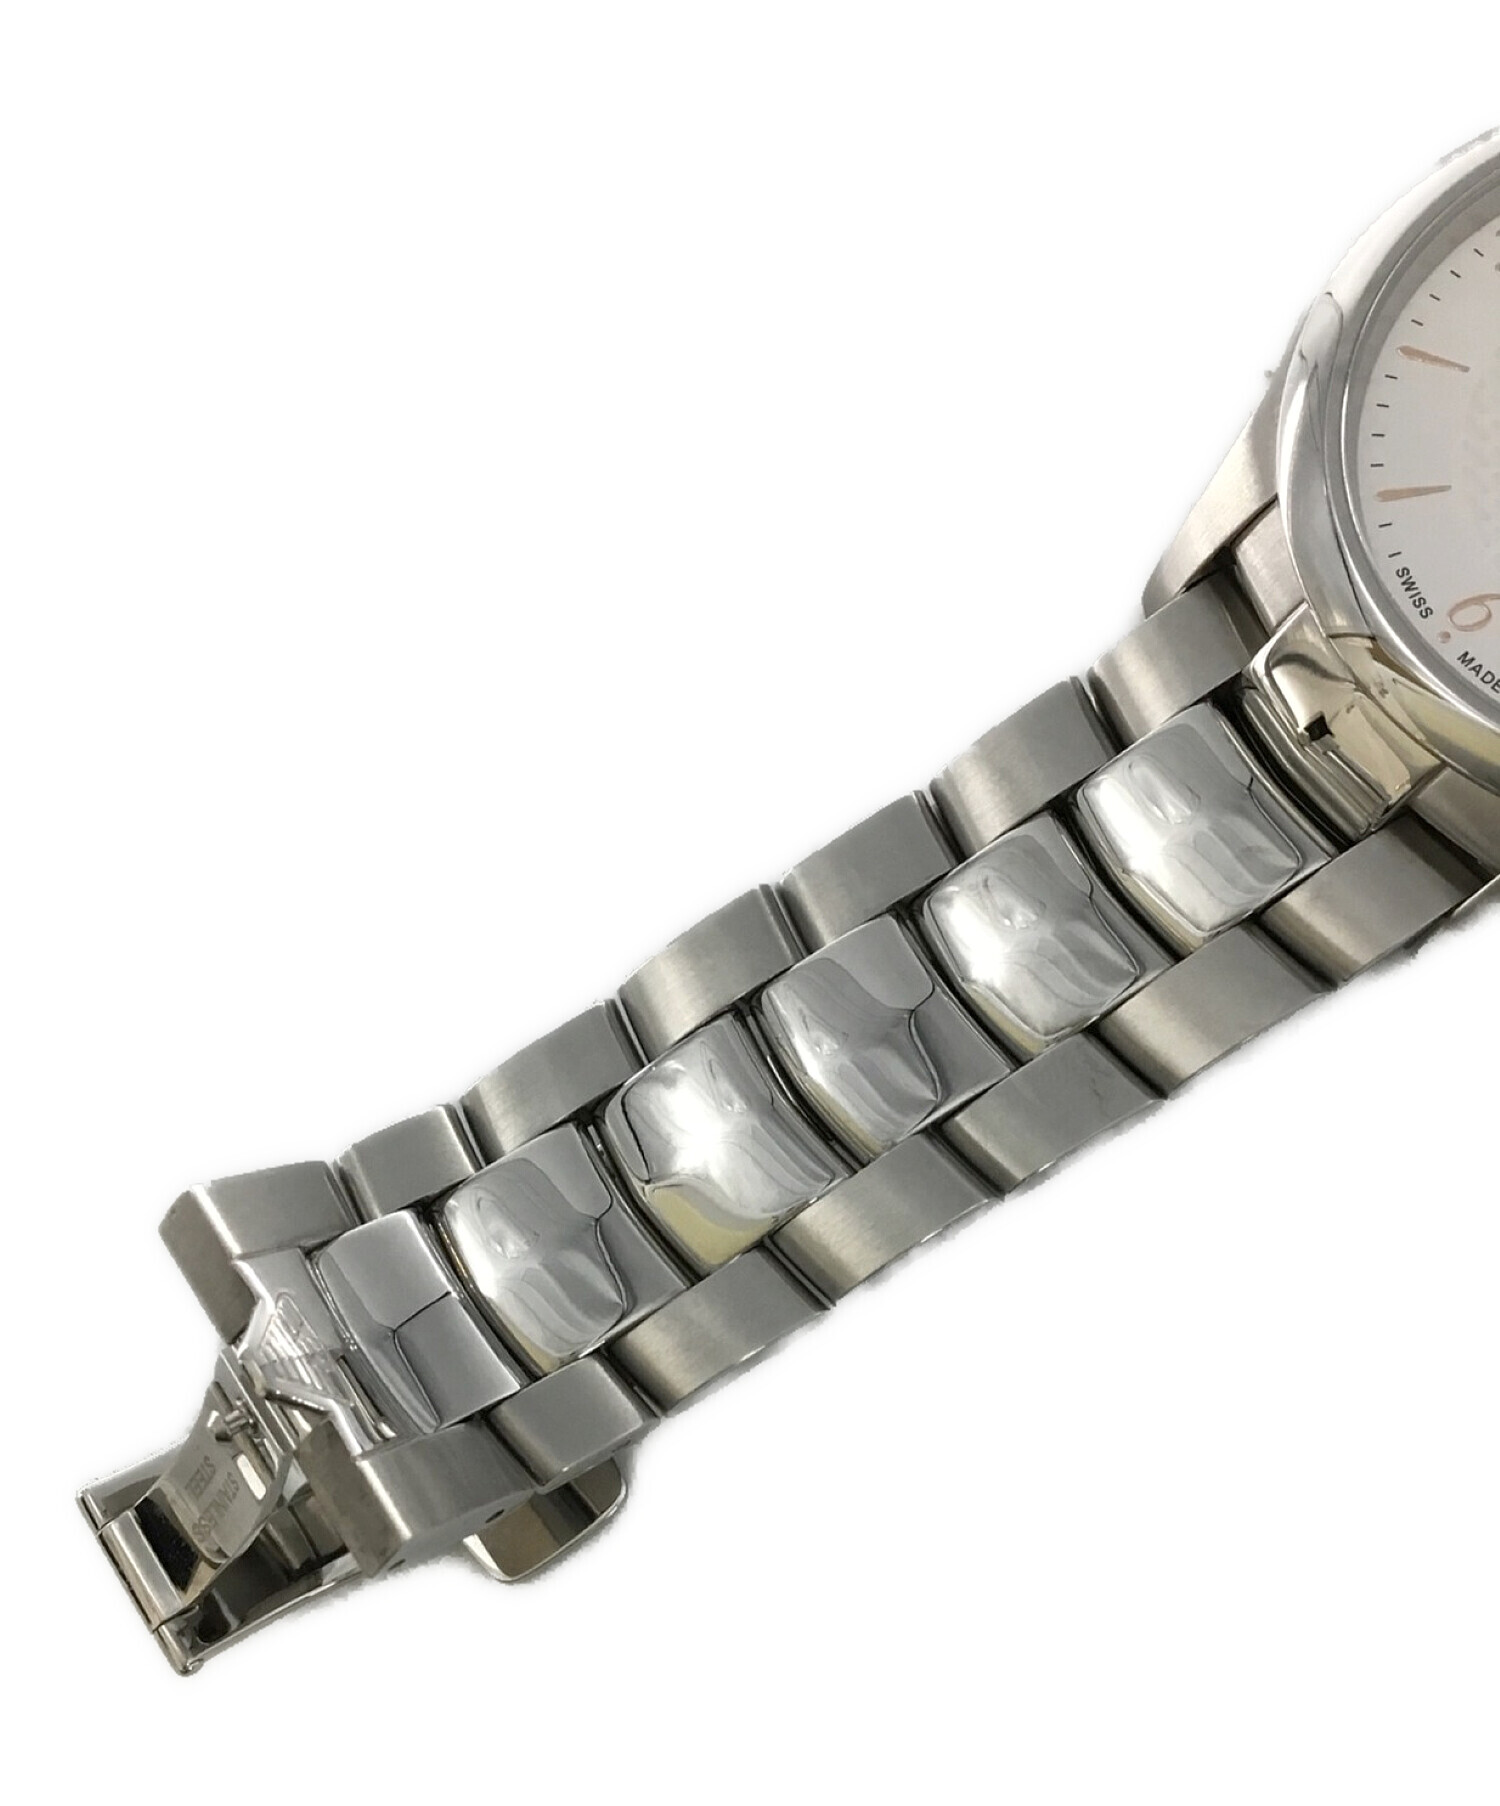 EMPORIO ARMANI (エンポリオアルマーニ) 腕時計 ESEDRA GENT サイズ:-